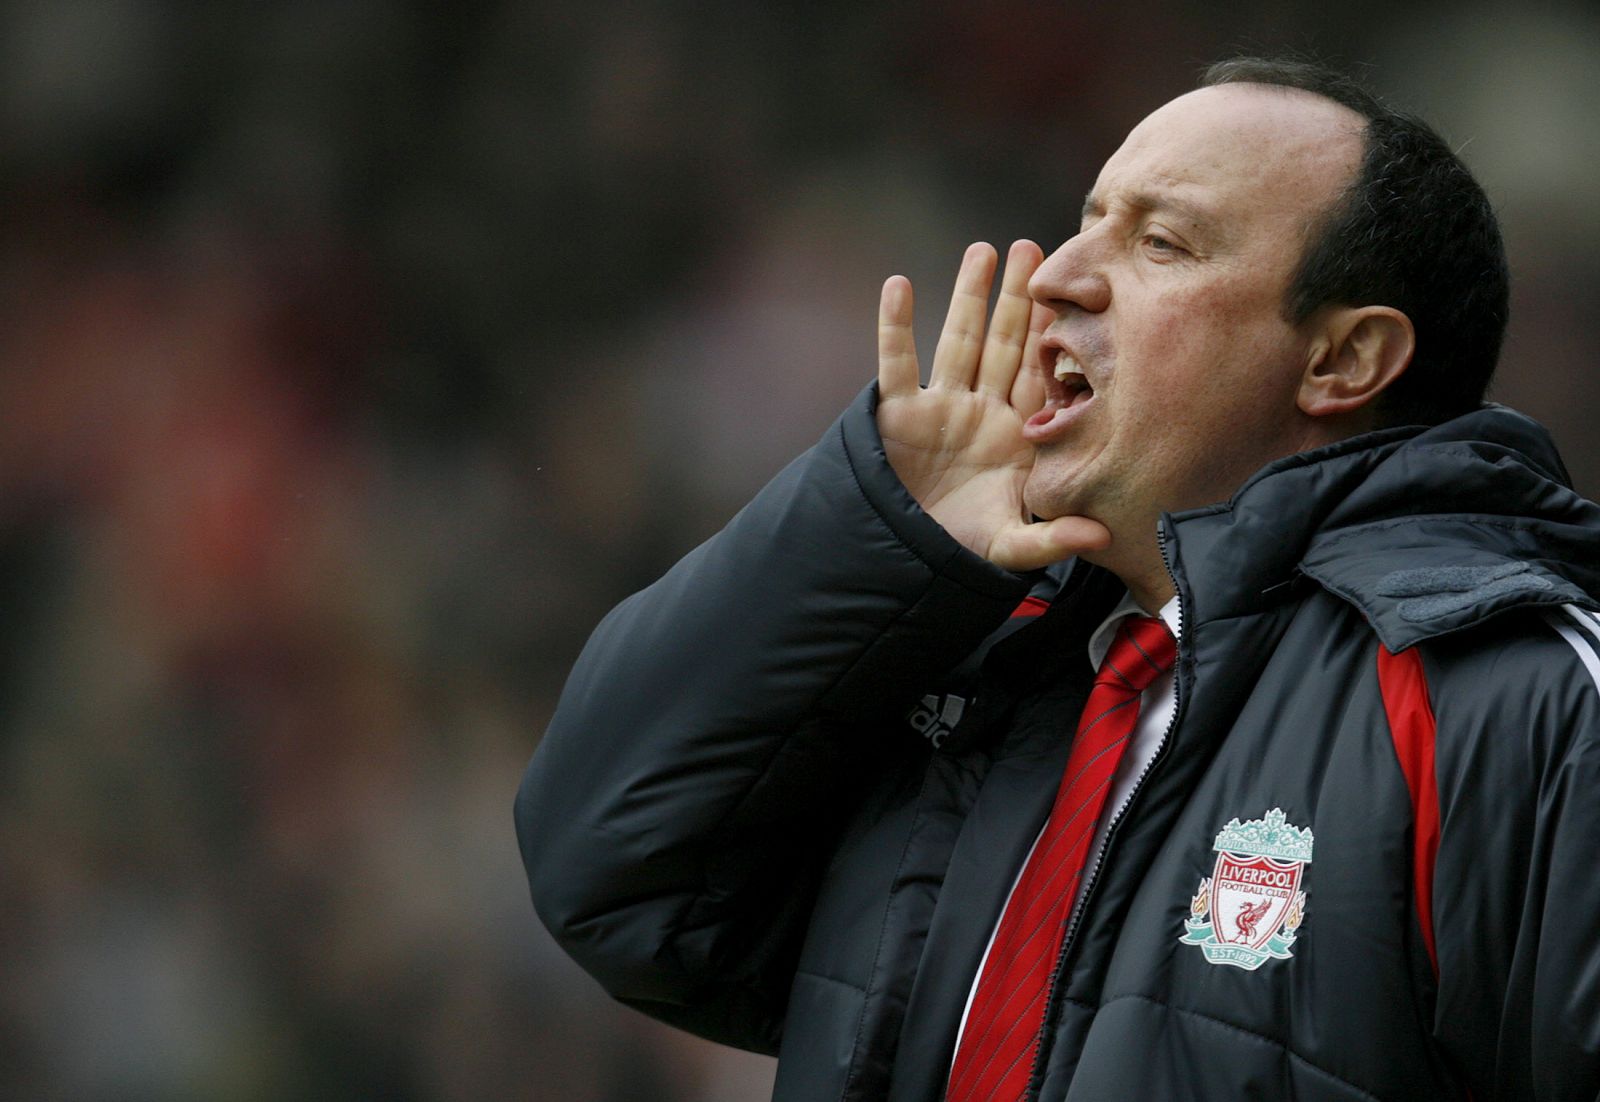 El entrenador del Liverpool, Rafa Benitez, da instrucciones a sus jugadores durante un encuentro de la Premier.